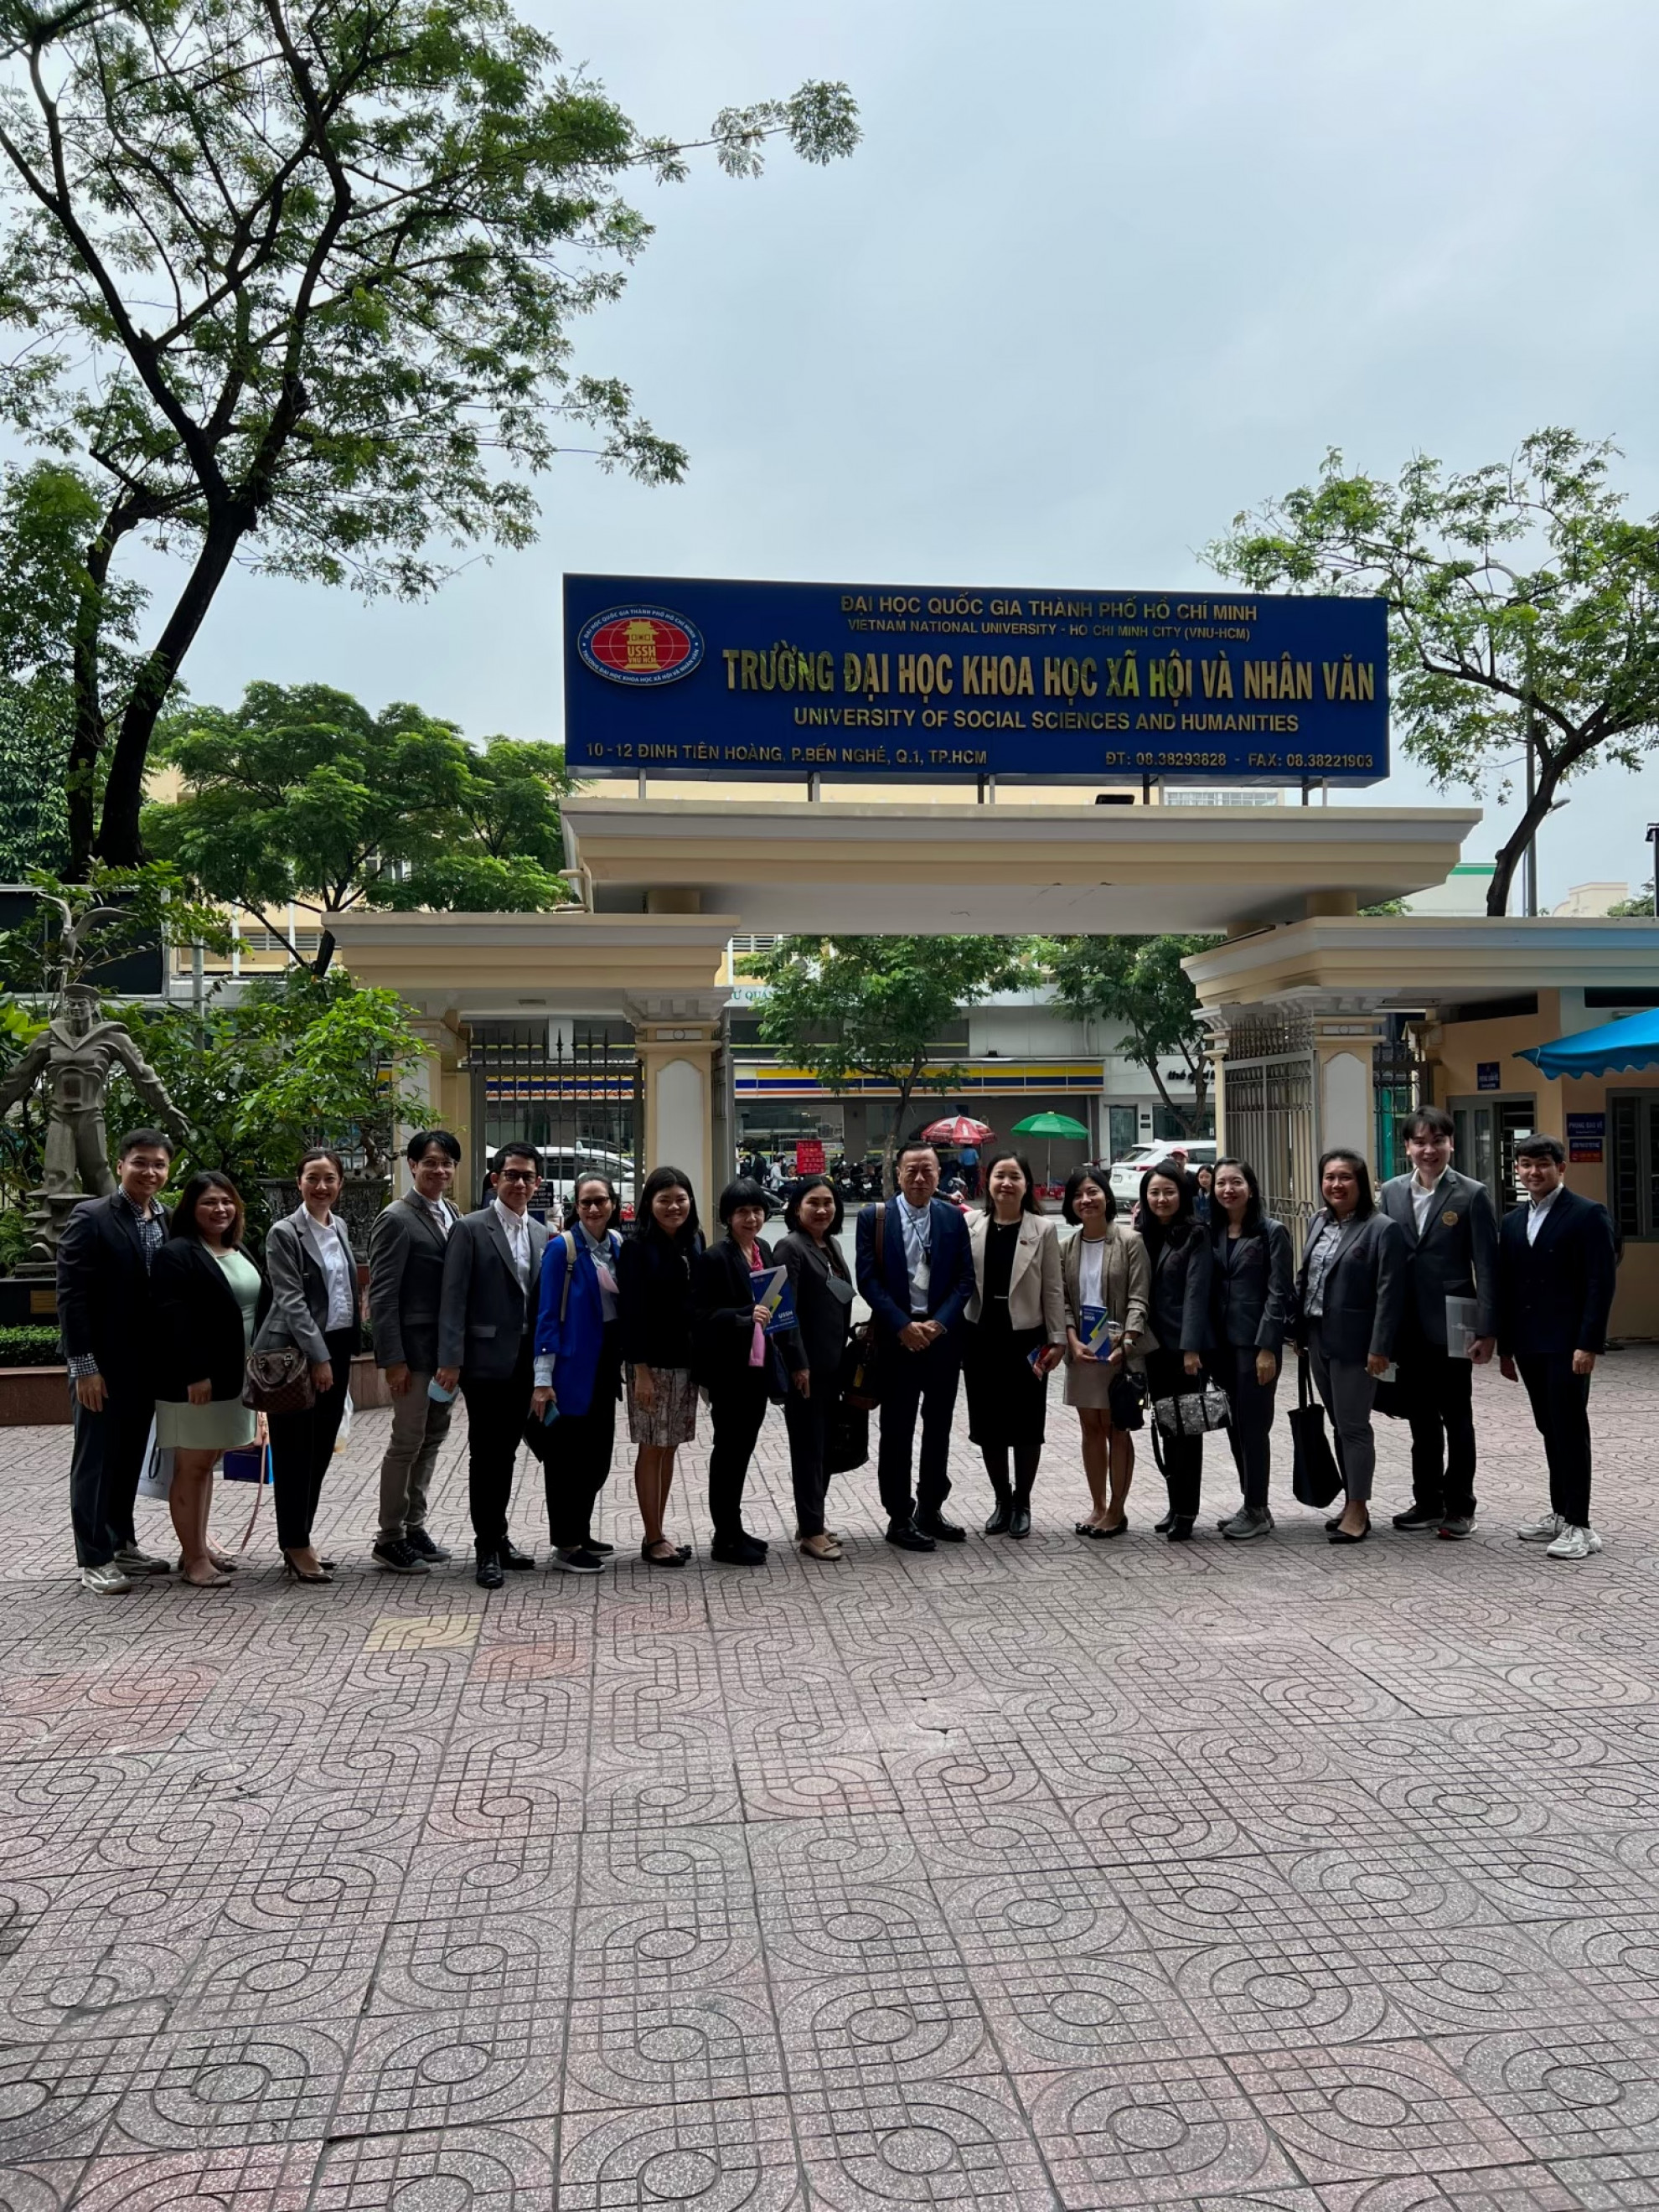 visiting the universities in Vietnam.